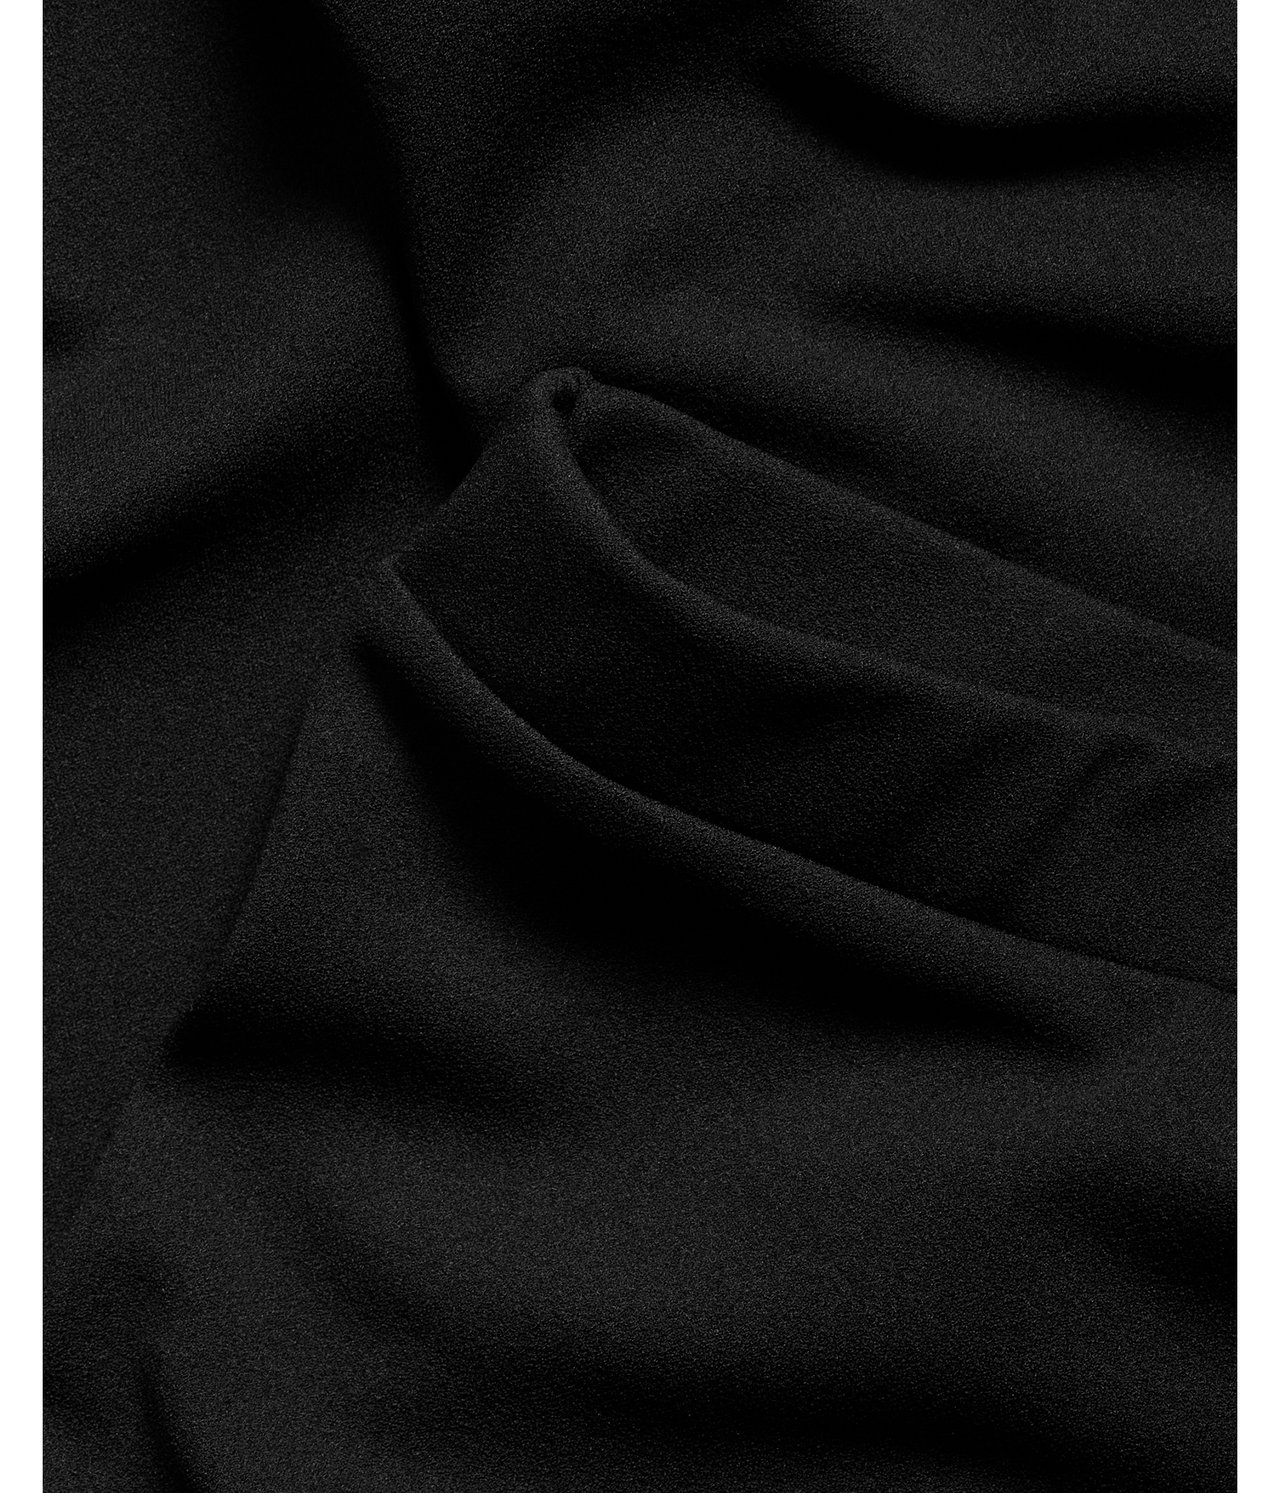 Szerokie pudełkowe spodnie - Czarne - 4